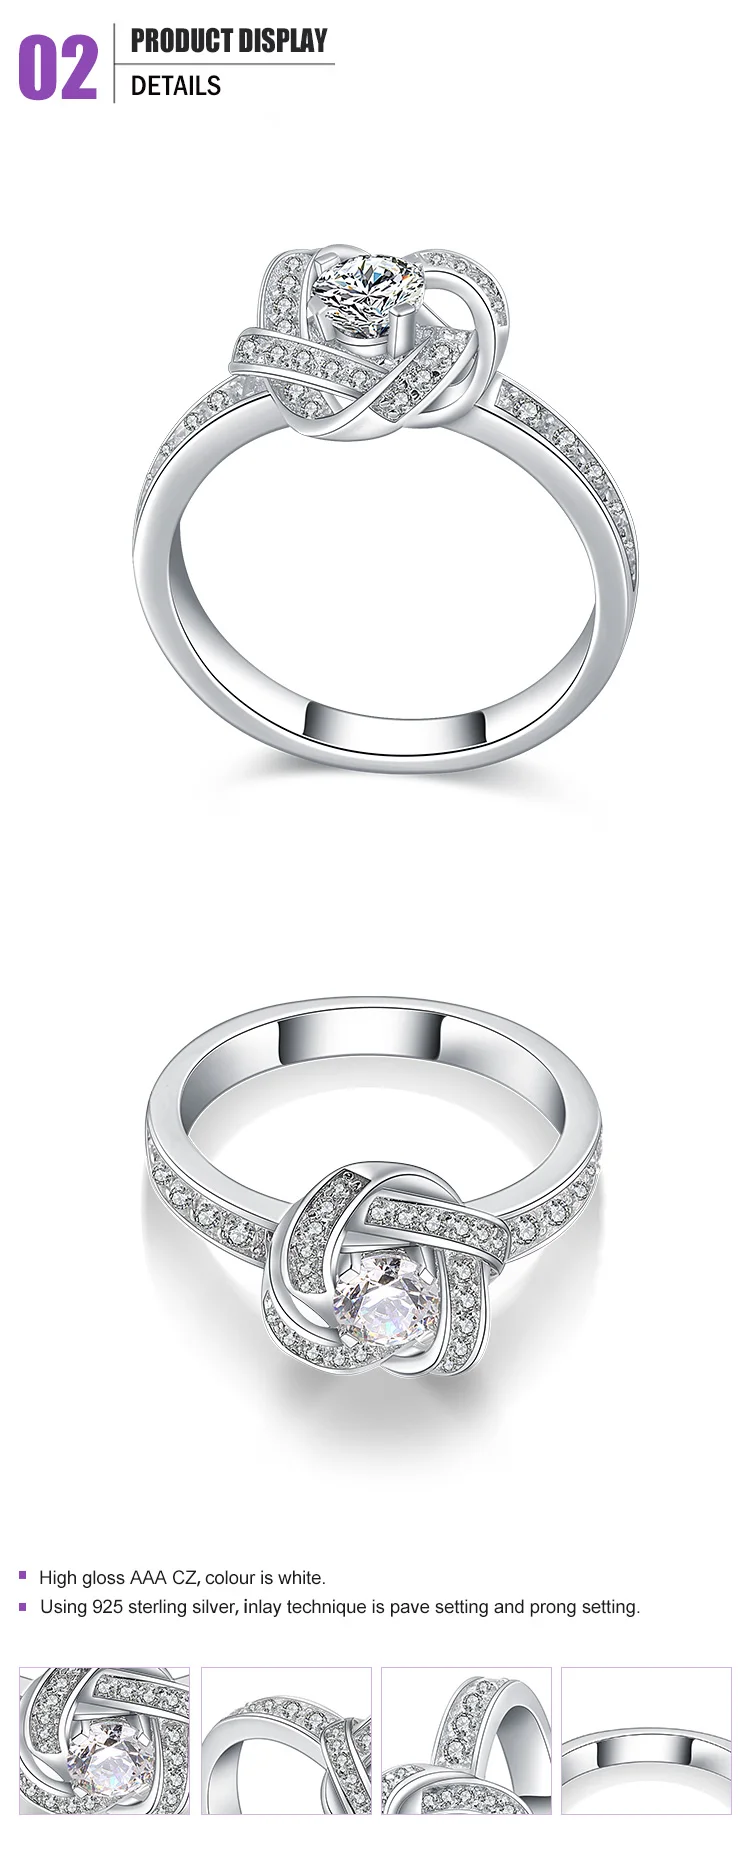 Fancy Gold Wedding Ring Set, Wedding Ring Gold 18K, 18K White Gold Ring Jewelry Women Wedding